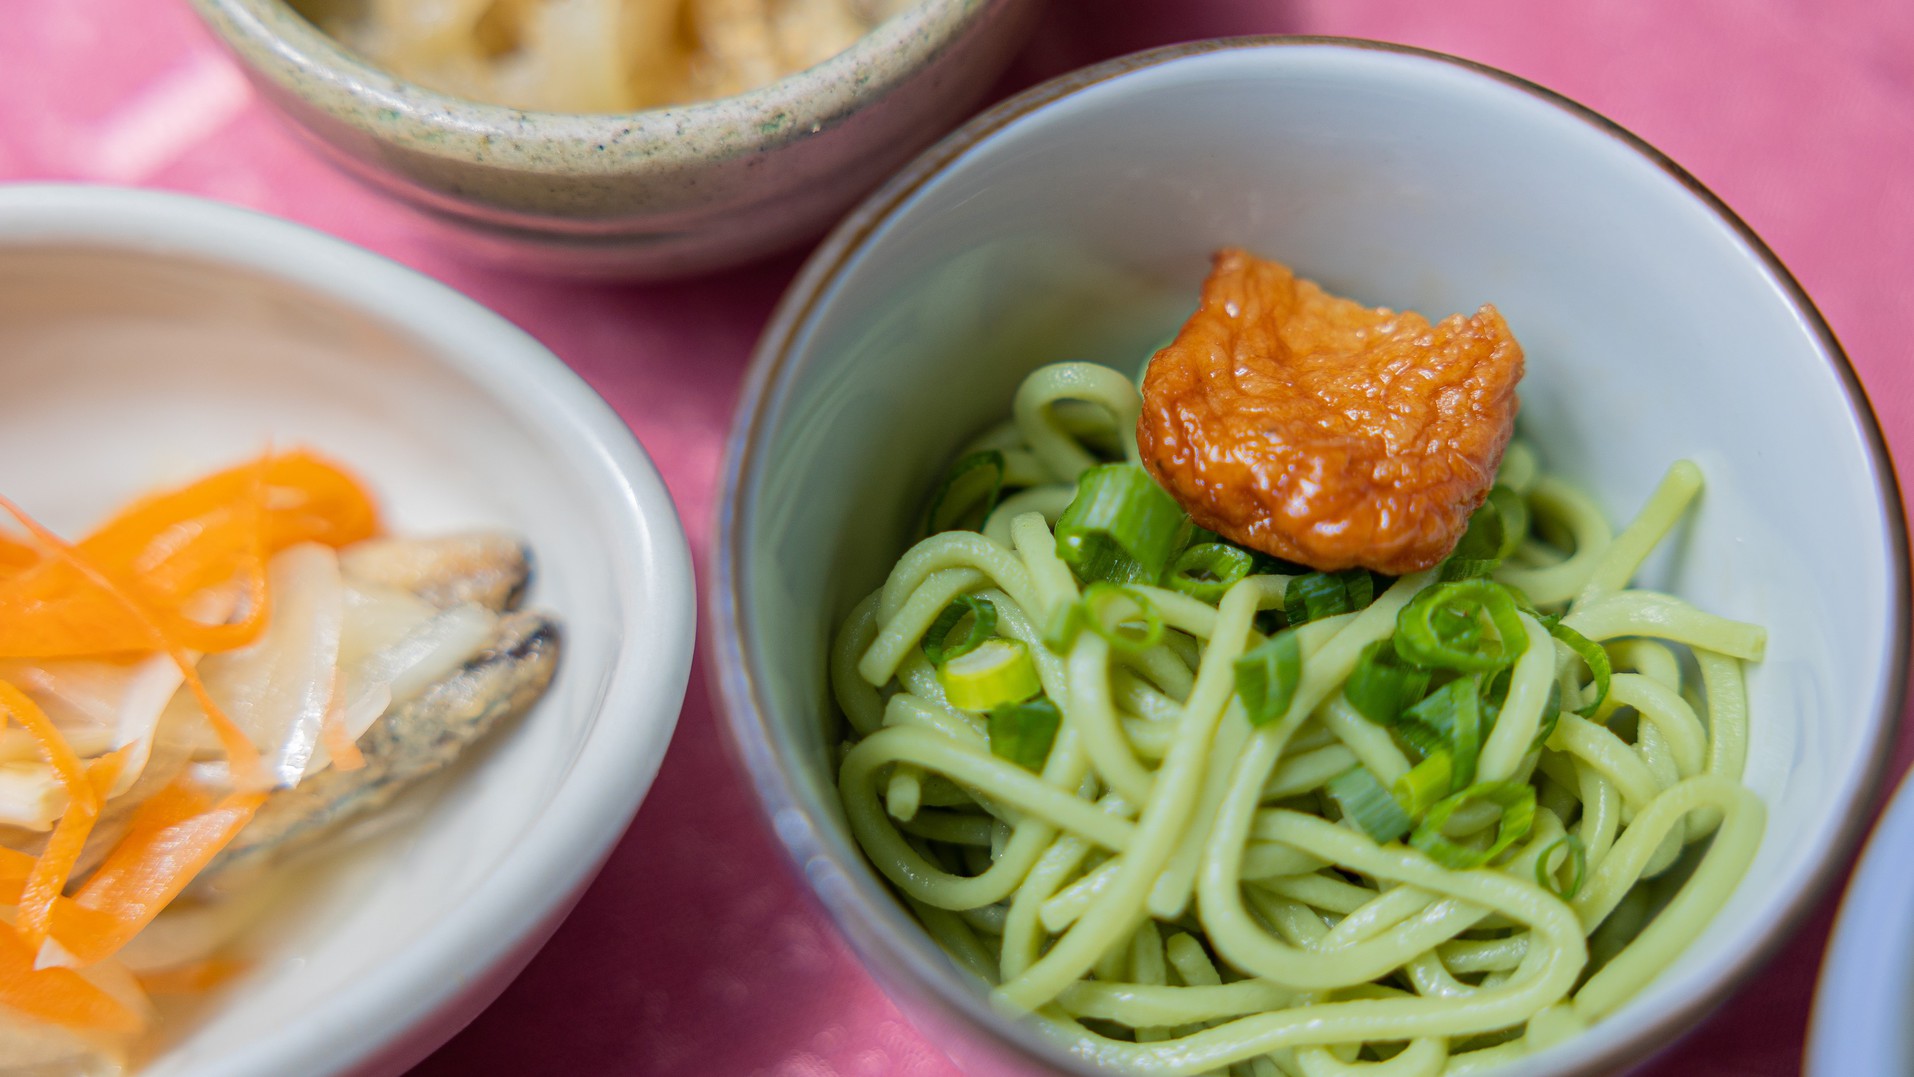 [ご夕食一例]地元薩摩の幸を丹念に吟味した郷土料理。板前の技と真心込めたおもてなし料理をご賞味下さい